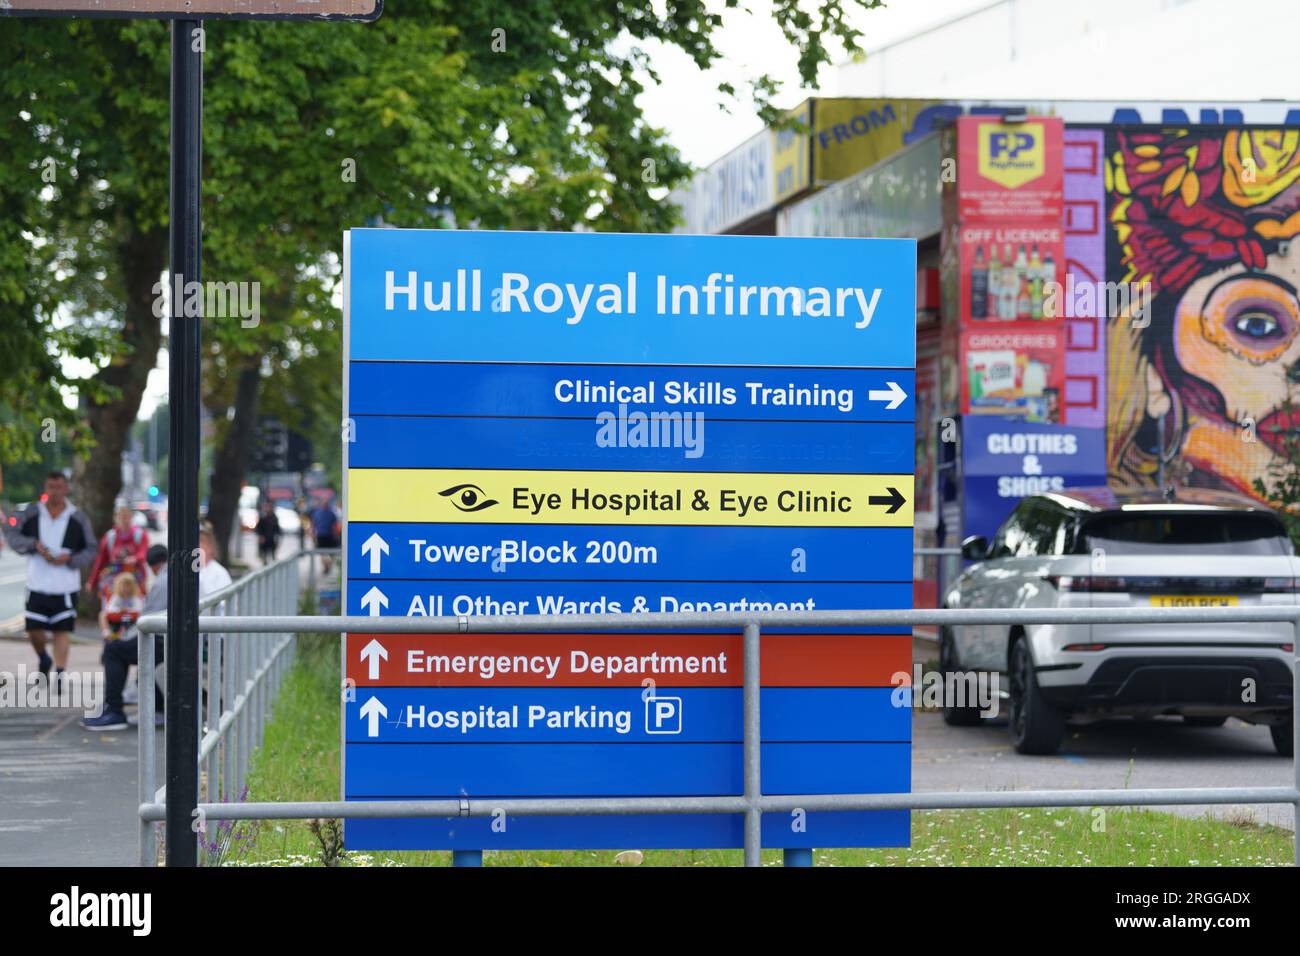 Hull Royal Infirmary, Hull, E. Yorkshire. 9 août 2023. Une visite de la Commission de la qualité des soins à la fin avril a révélé que la condition à l’infirmerie royale de Hull était «chaotique et inadaptée à l’usage». Le CQC a déclassé l’hôpital à « inadéquat ». Les patrons ont accepté le rapport « dans son intégralité » et travaillent à améliorer toutes les sections de soins (en particulier les services de maternité comme souligné). Bridget Catterall AlamyLiveNews. Banque D'Images